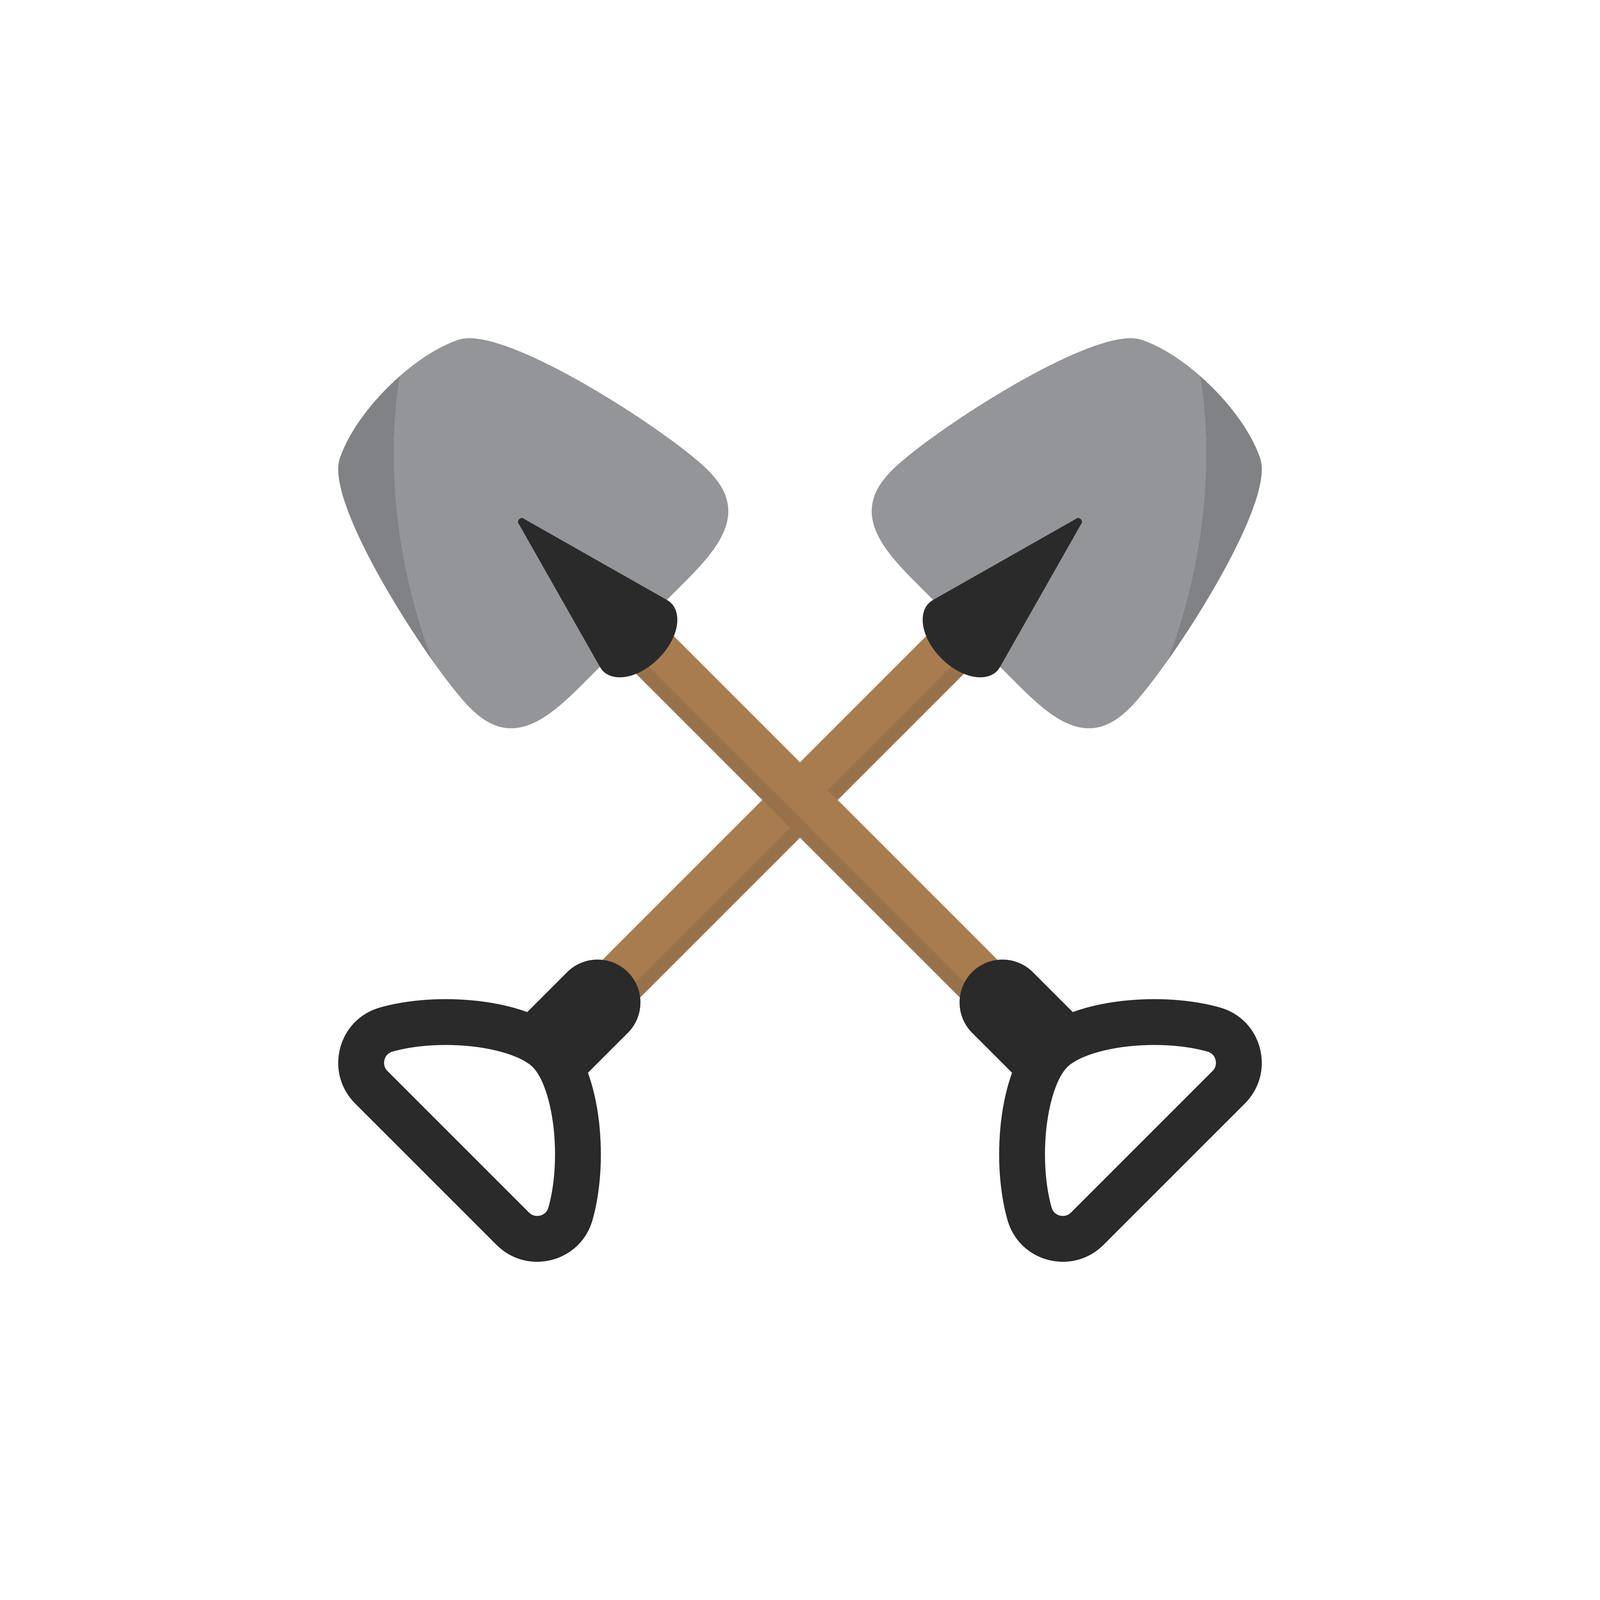 Shovel icon vector flat design template